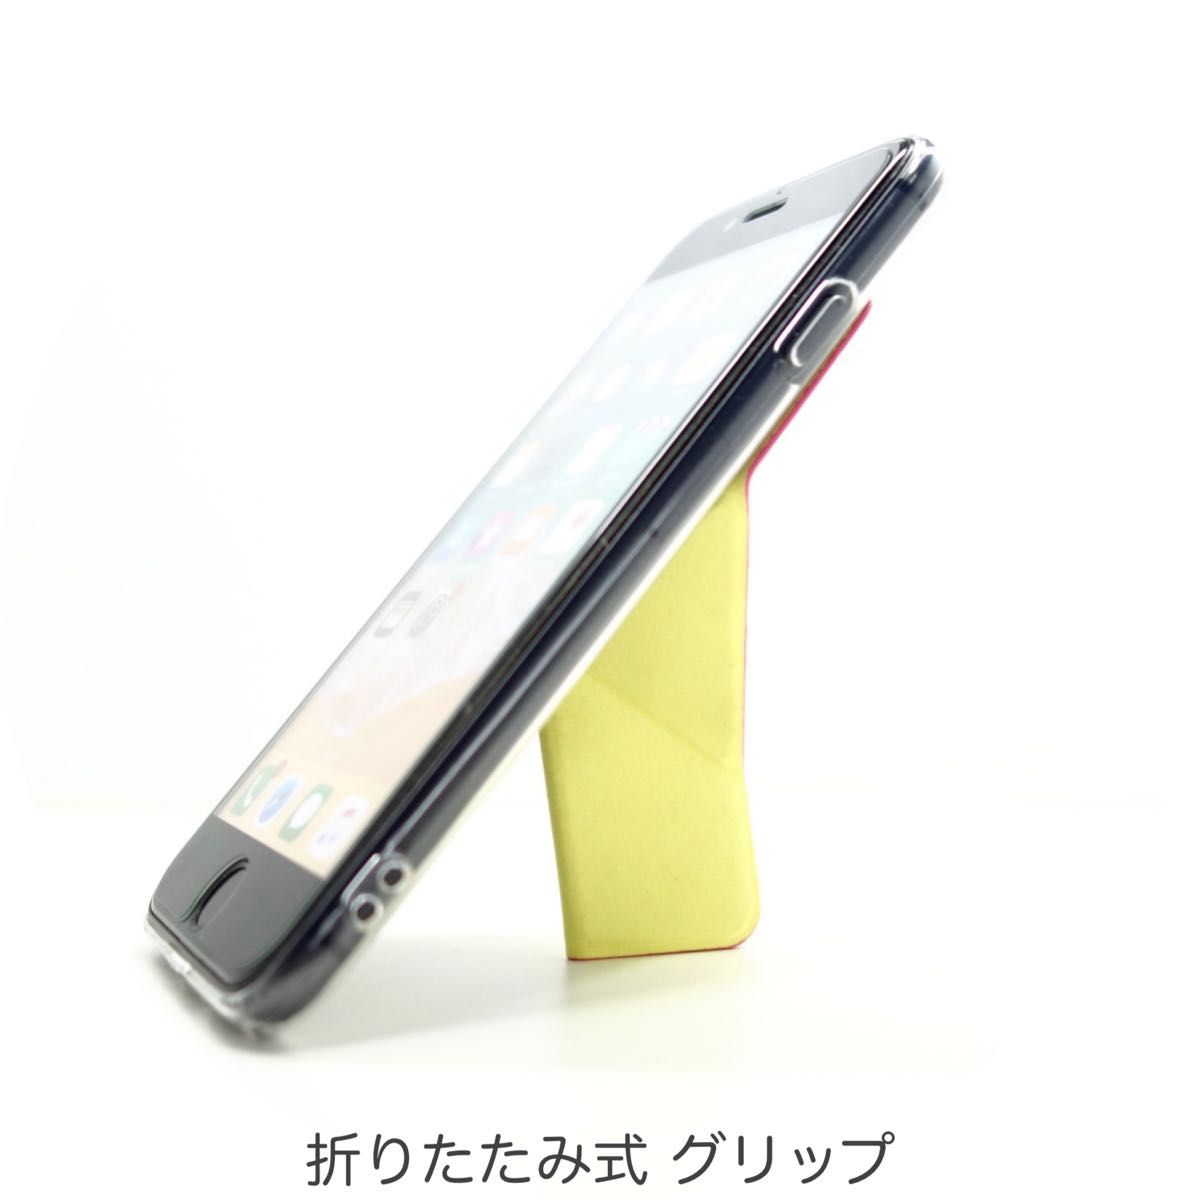 iPhone ケース SE3 SE2 8 7 スマホスタンド スマホグリップ マグネット内蔵 ワイヤレス充電OK ムーンピンク